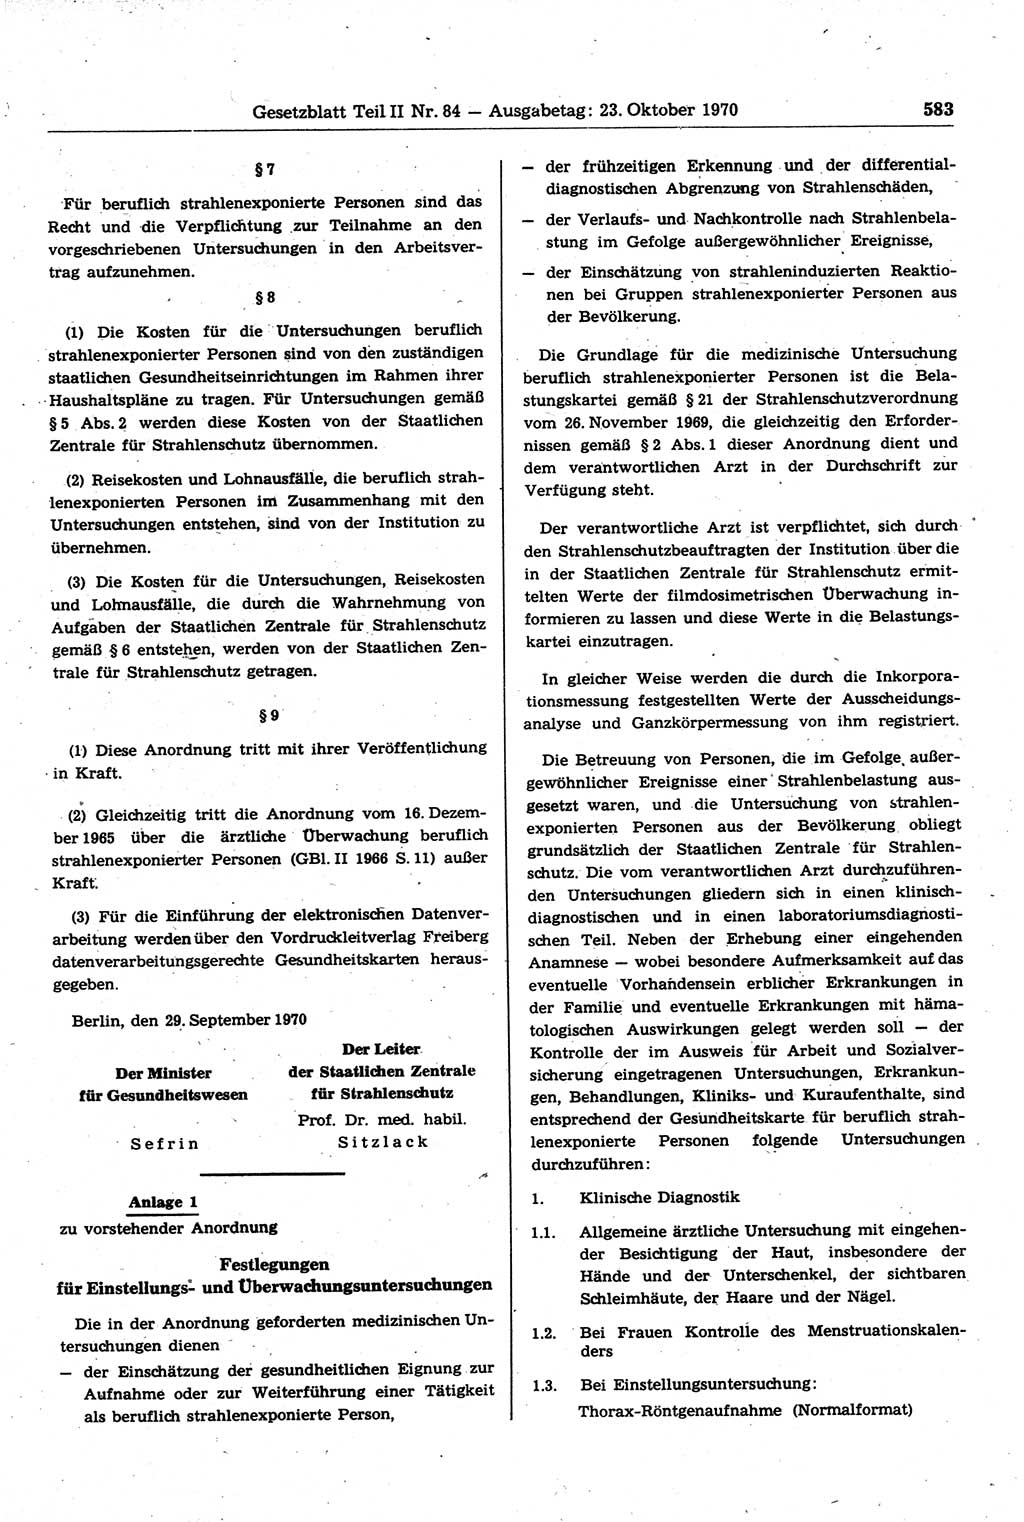 Gesetzblatt (GBl.) der Deutschen Demokratischen Republik (DDR) Teil ⅠⅠ 1970, Seite 583 (GBl. DDR ⅠⅠ 1970, S. 583)